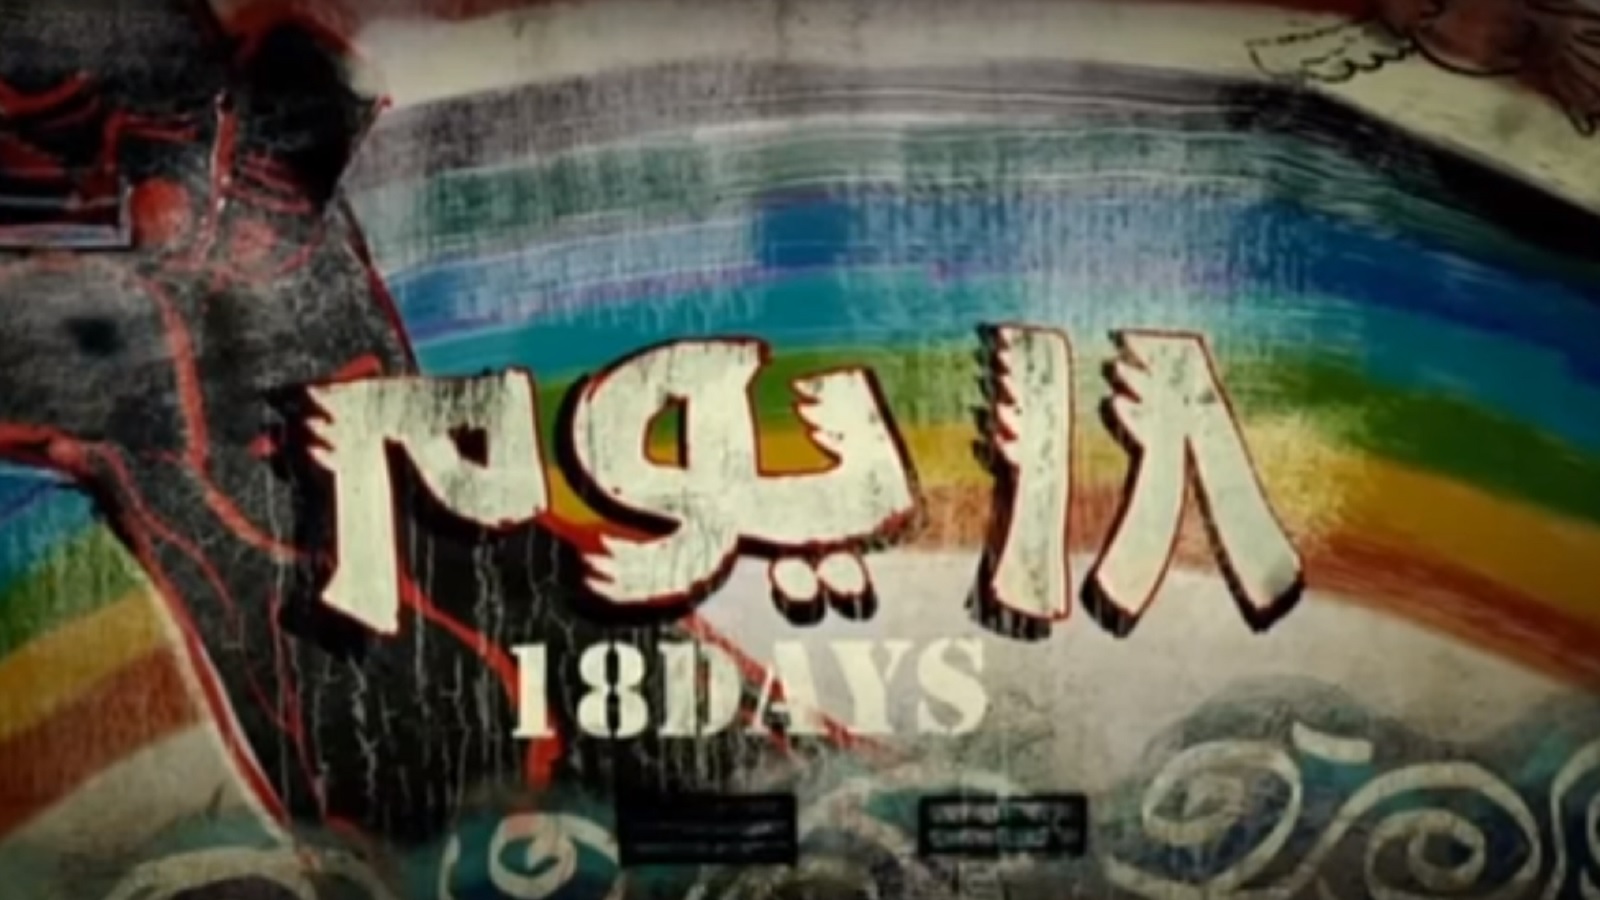 ما قصة التباينات حول تسريب فيلم "18 يوم"؟